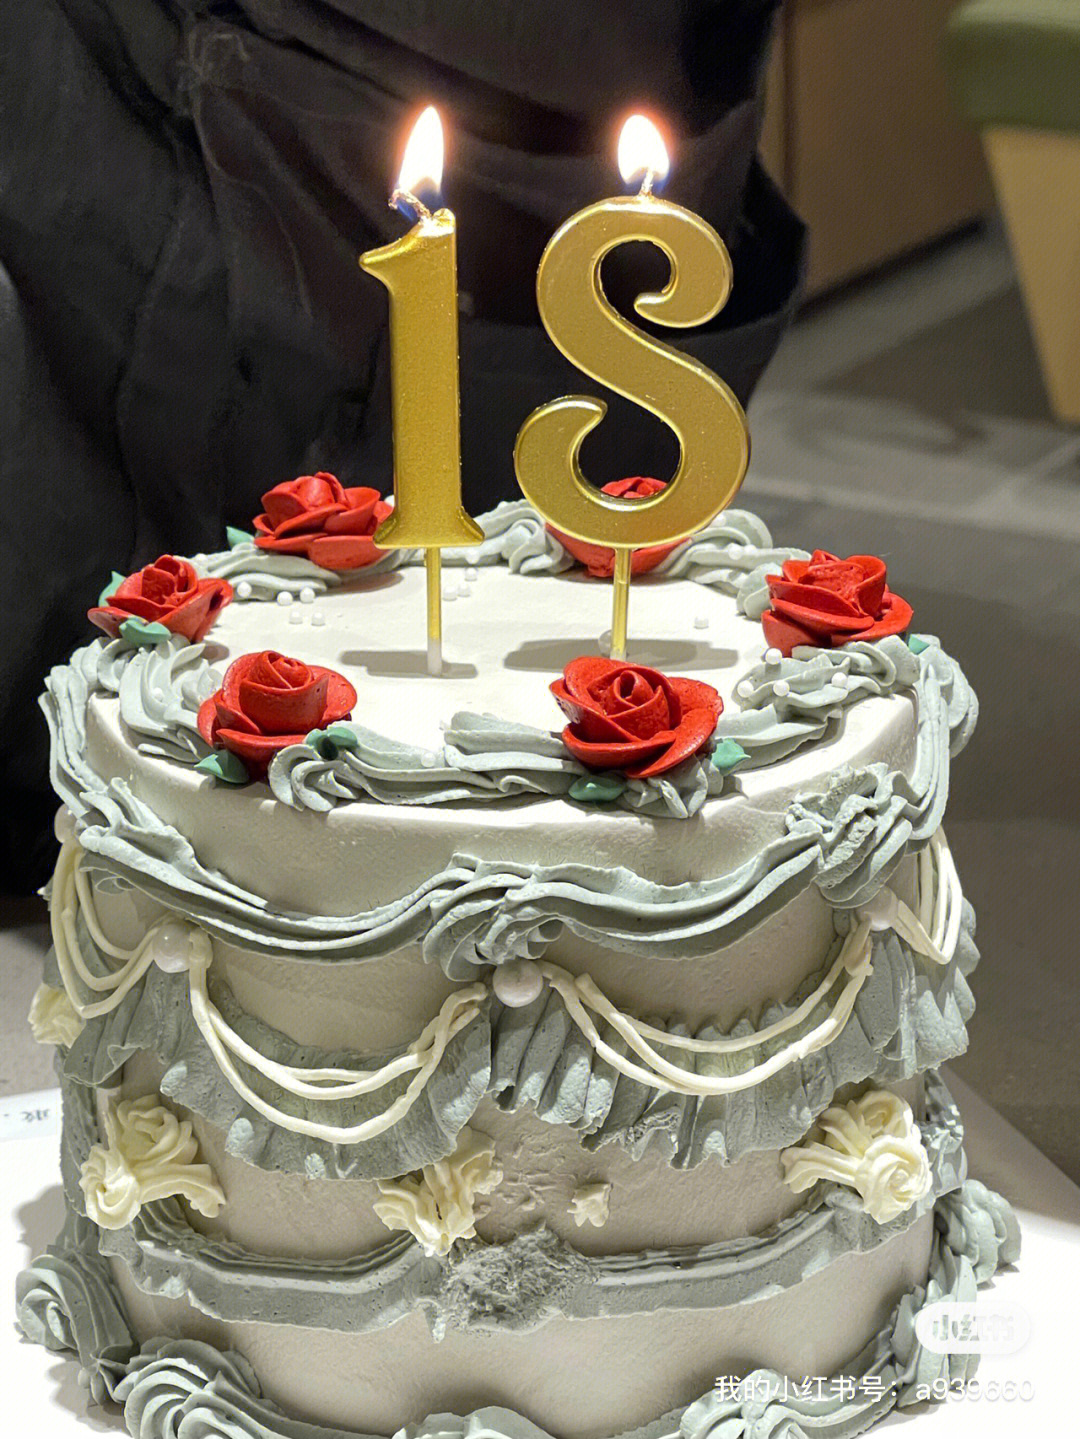 祝你18岁生日快乐郑州蛋糕推荐复古蛋糕